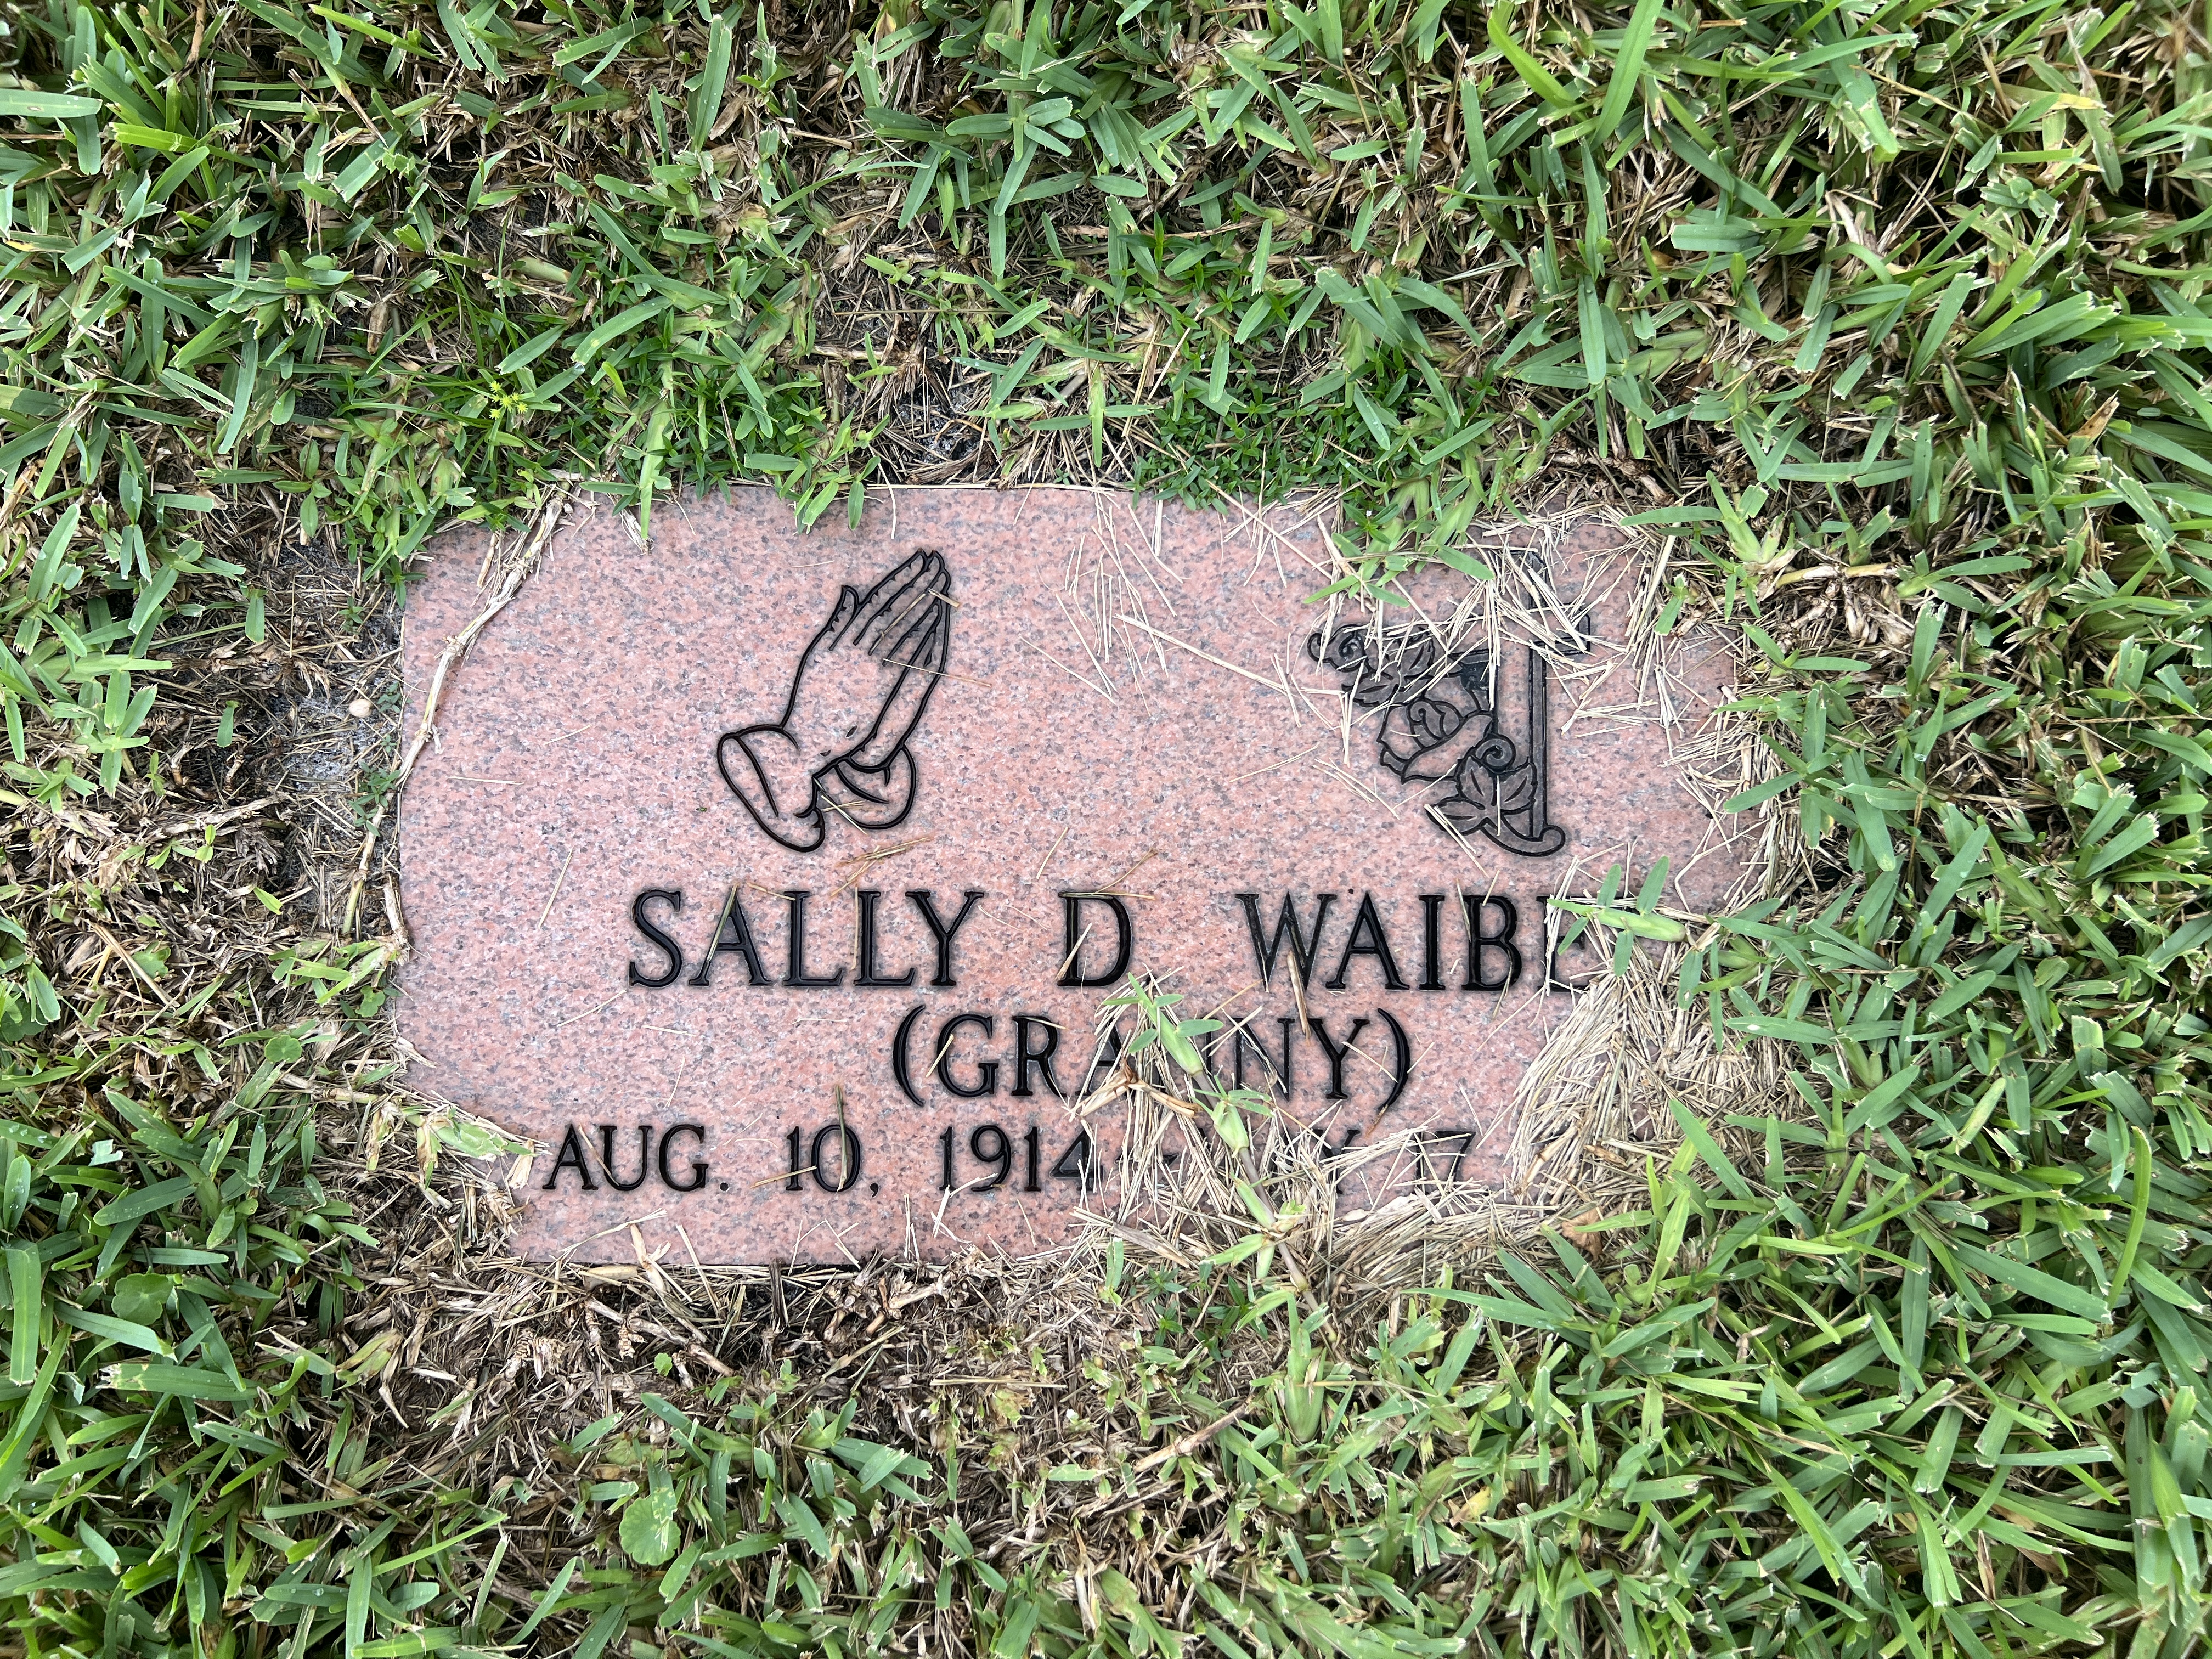 Sally D Waibel